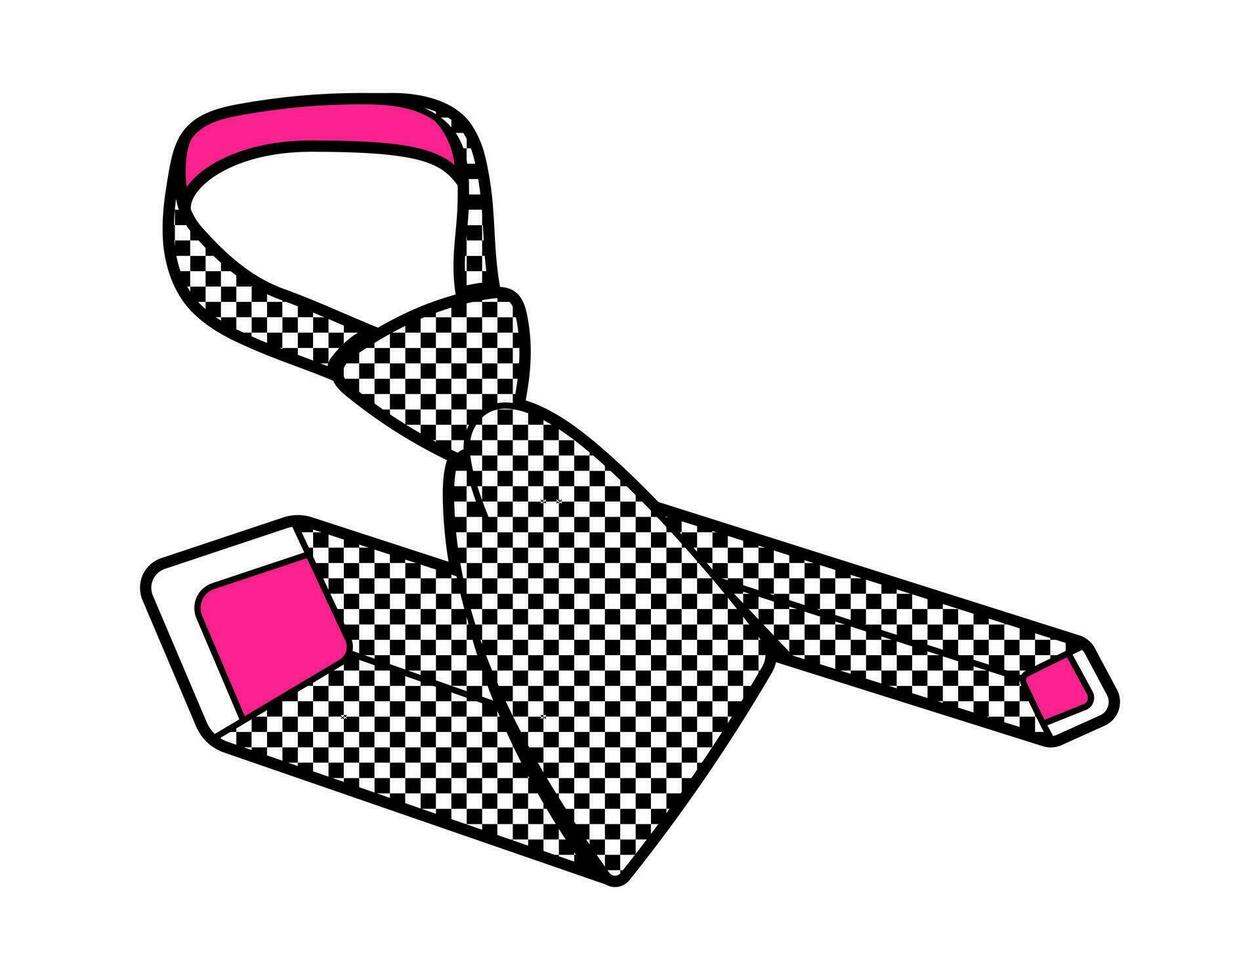 en 2000-talet trendig emo goth slips. platt vektor illustration, hand ritade. estetik, 00-talet. rosa och svart